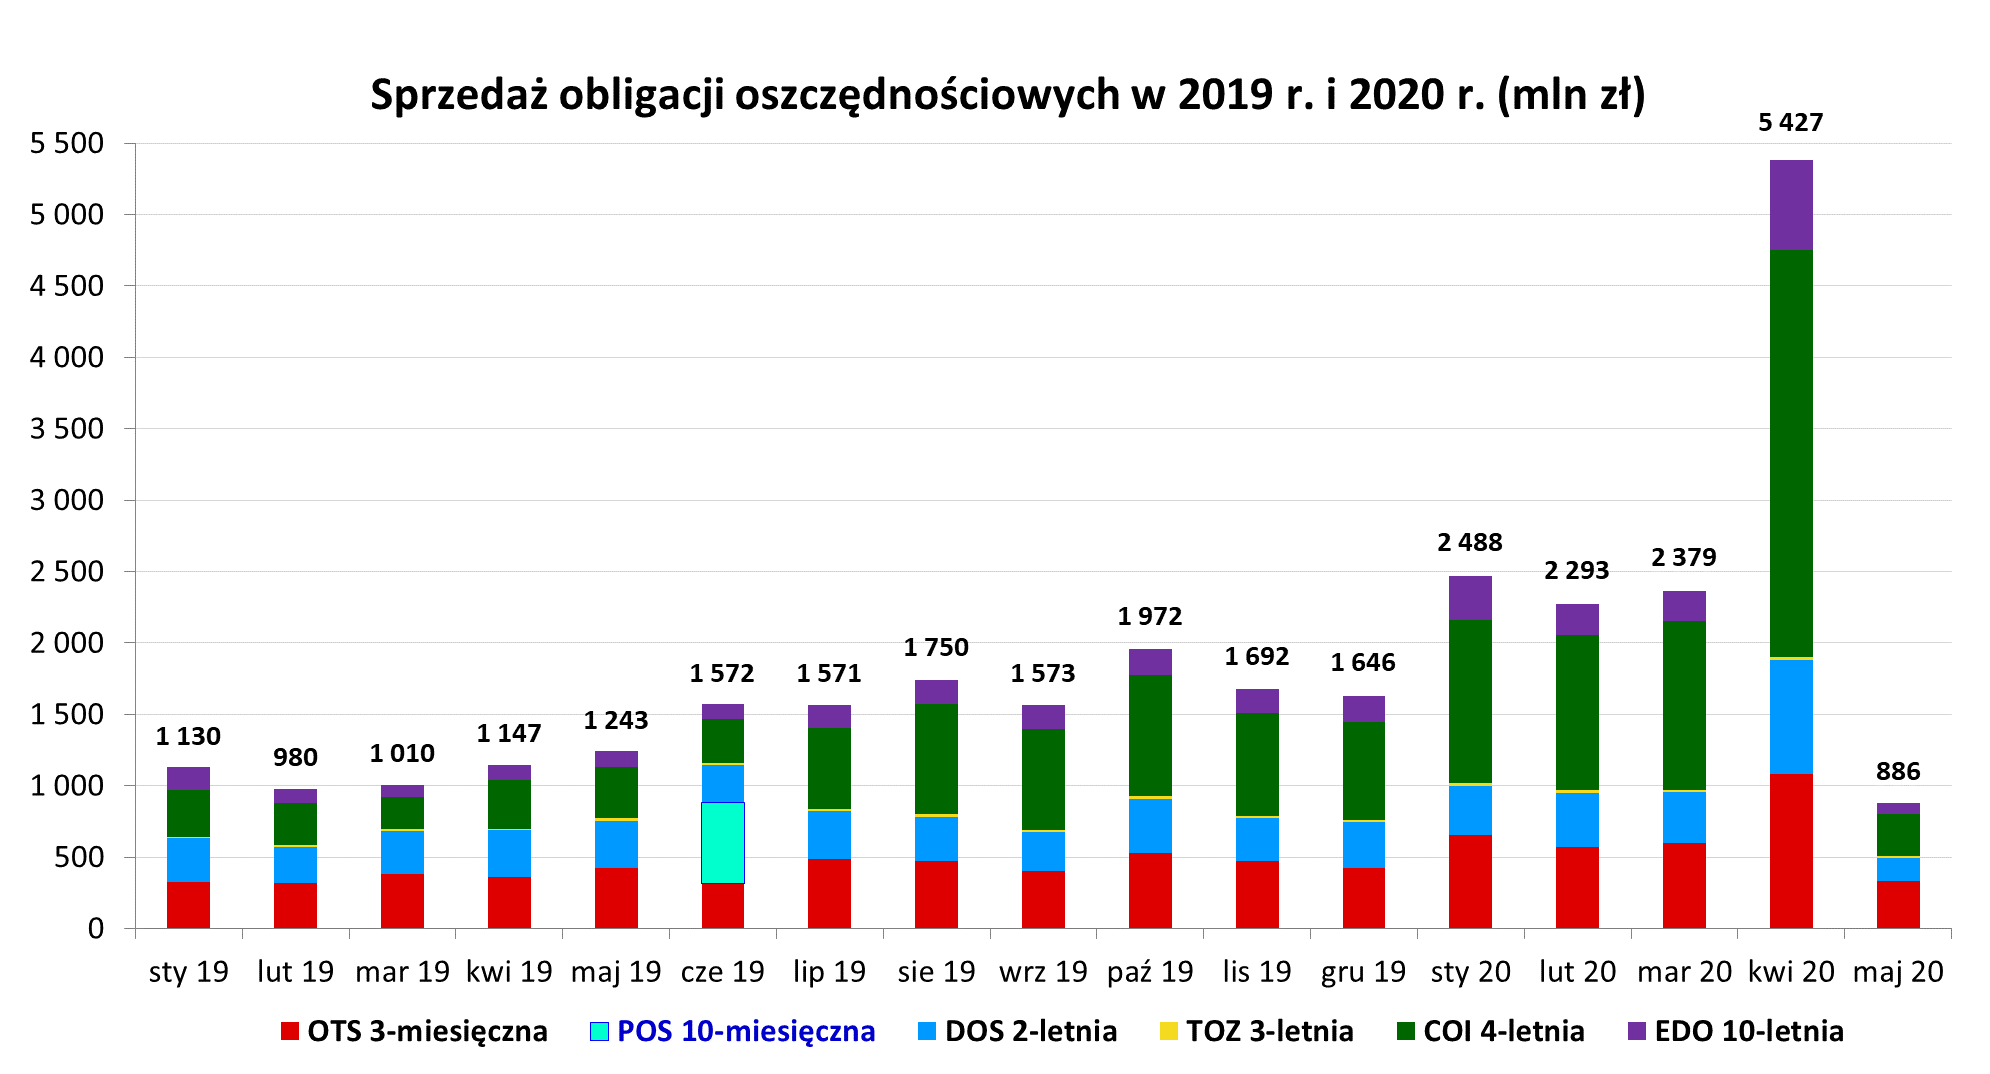 Wykres dot. sprzedaży obligacji w 2019 i 2020 r. w mln zł